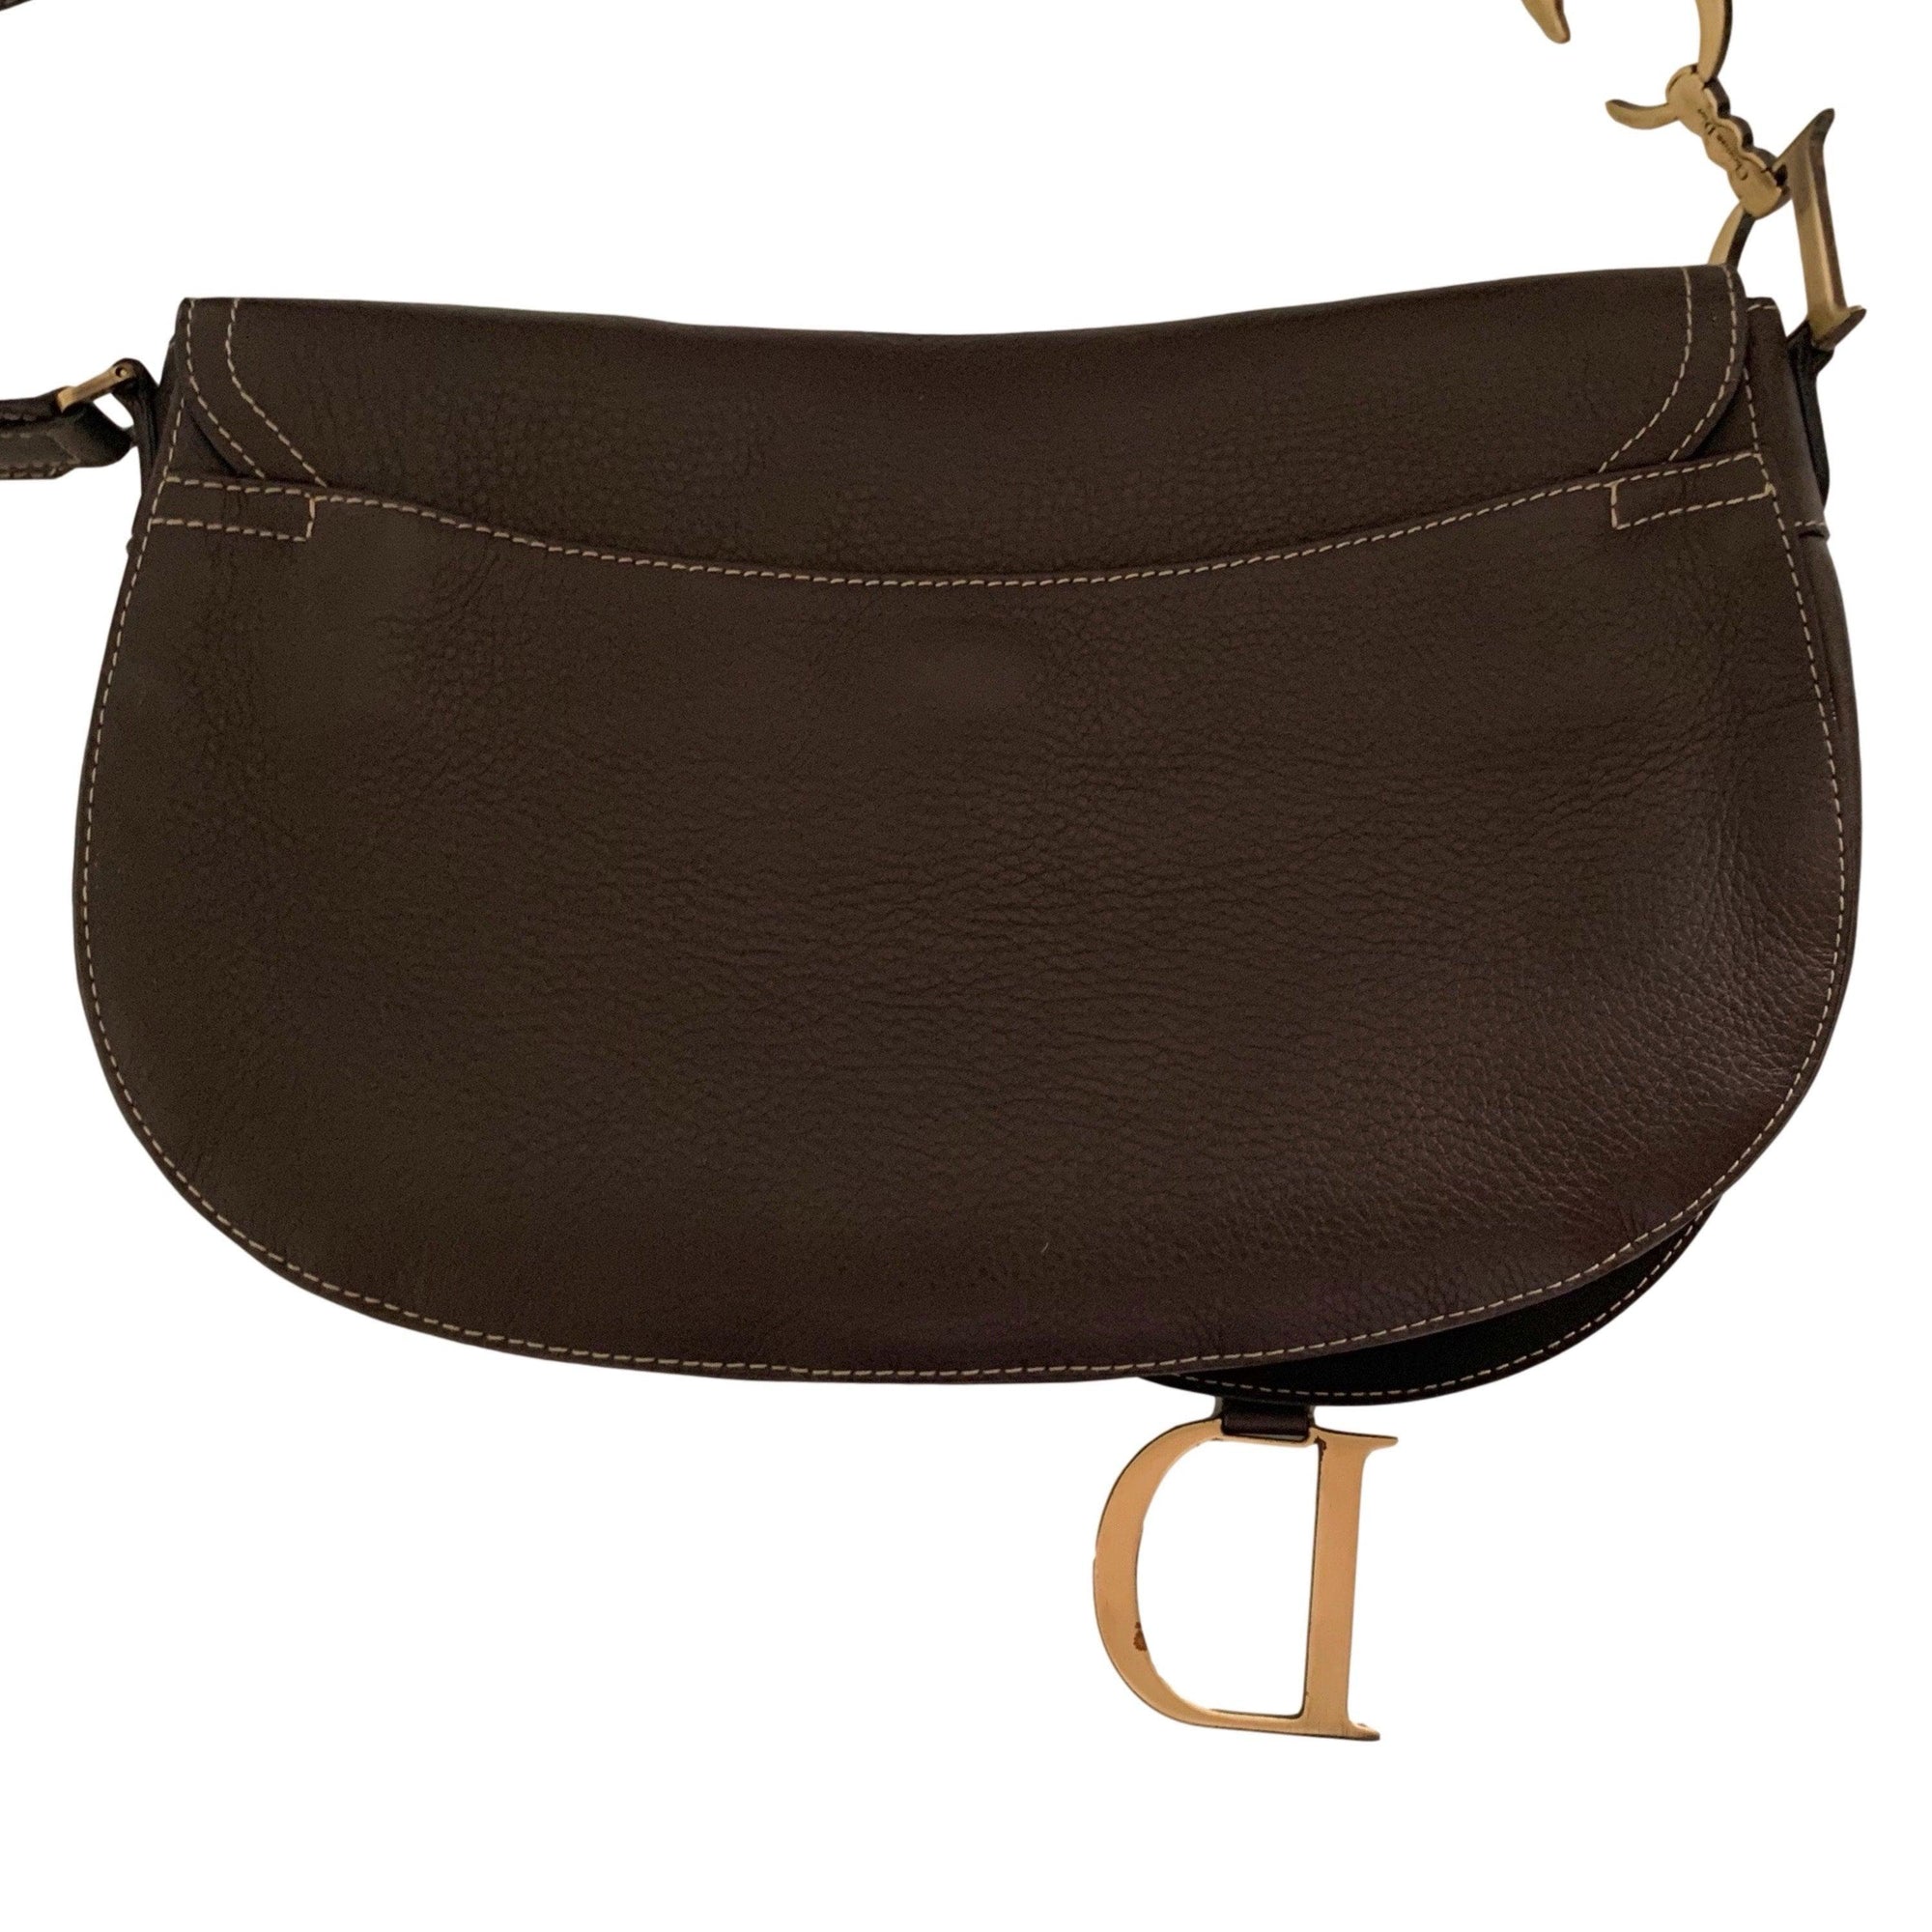 Dior Brown Leather Saddle Bag - Handbags